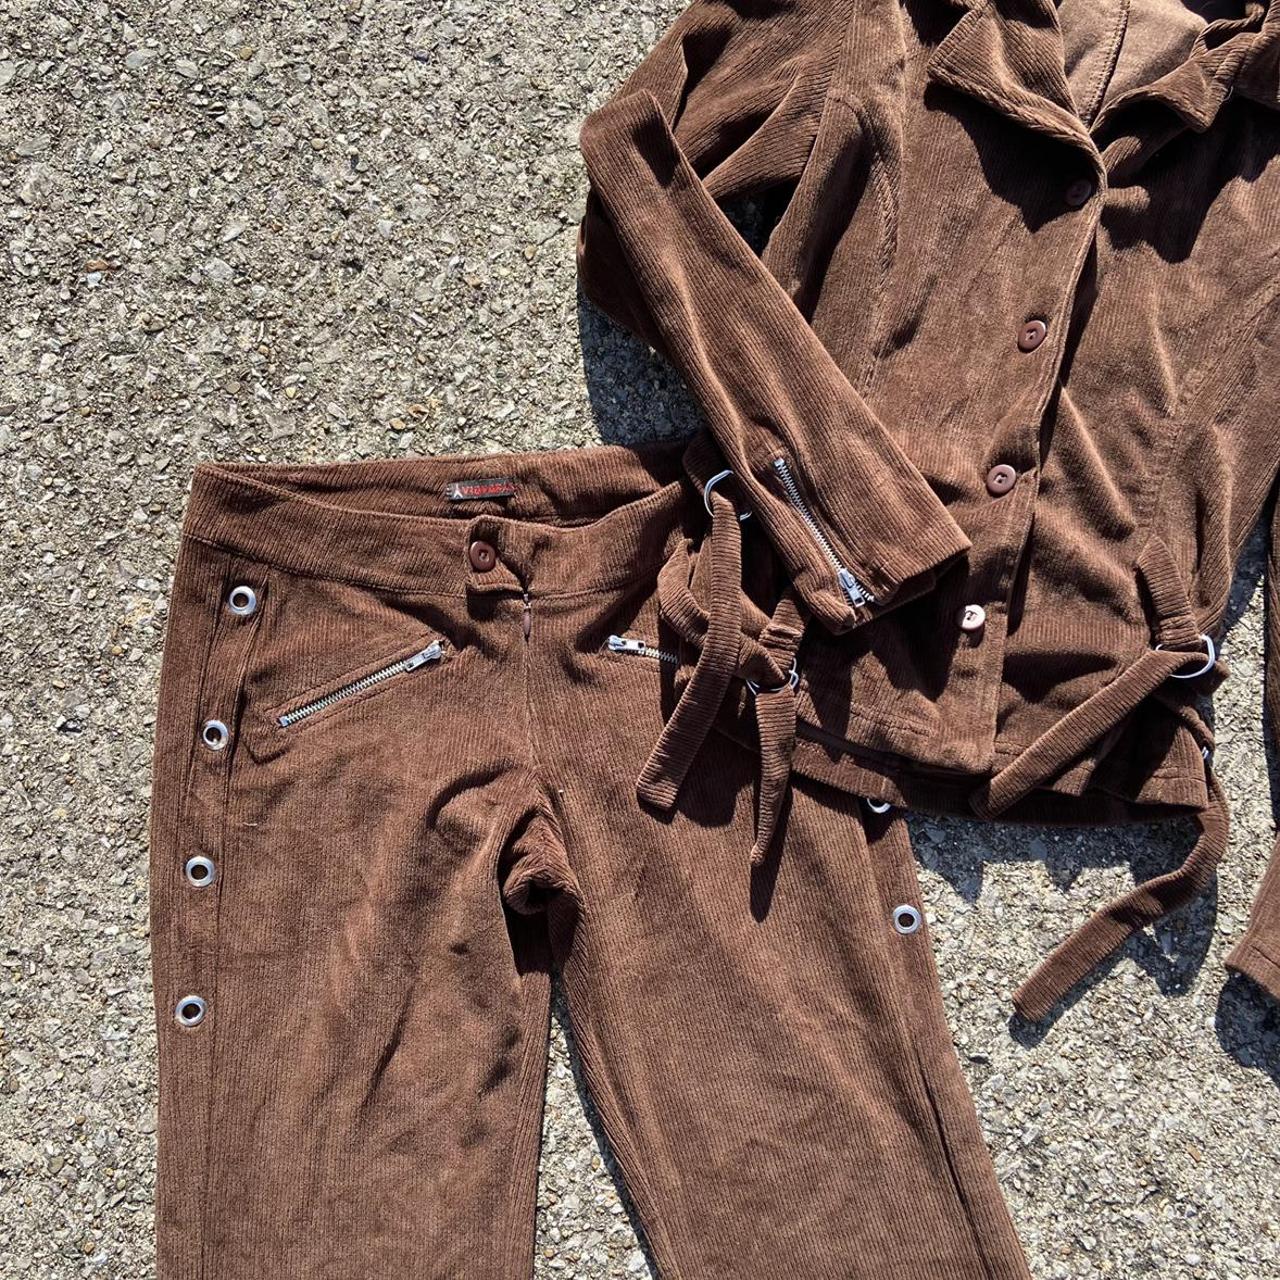 Vintage 90s / Y2k brown corduroy low rise pants with - Depop